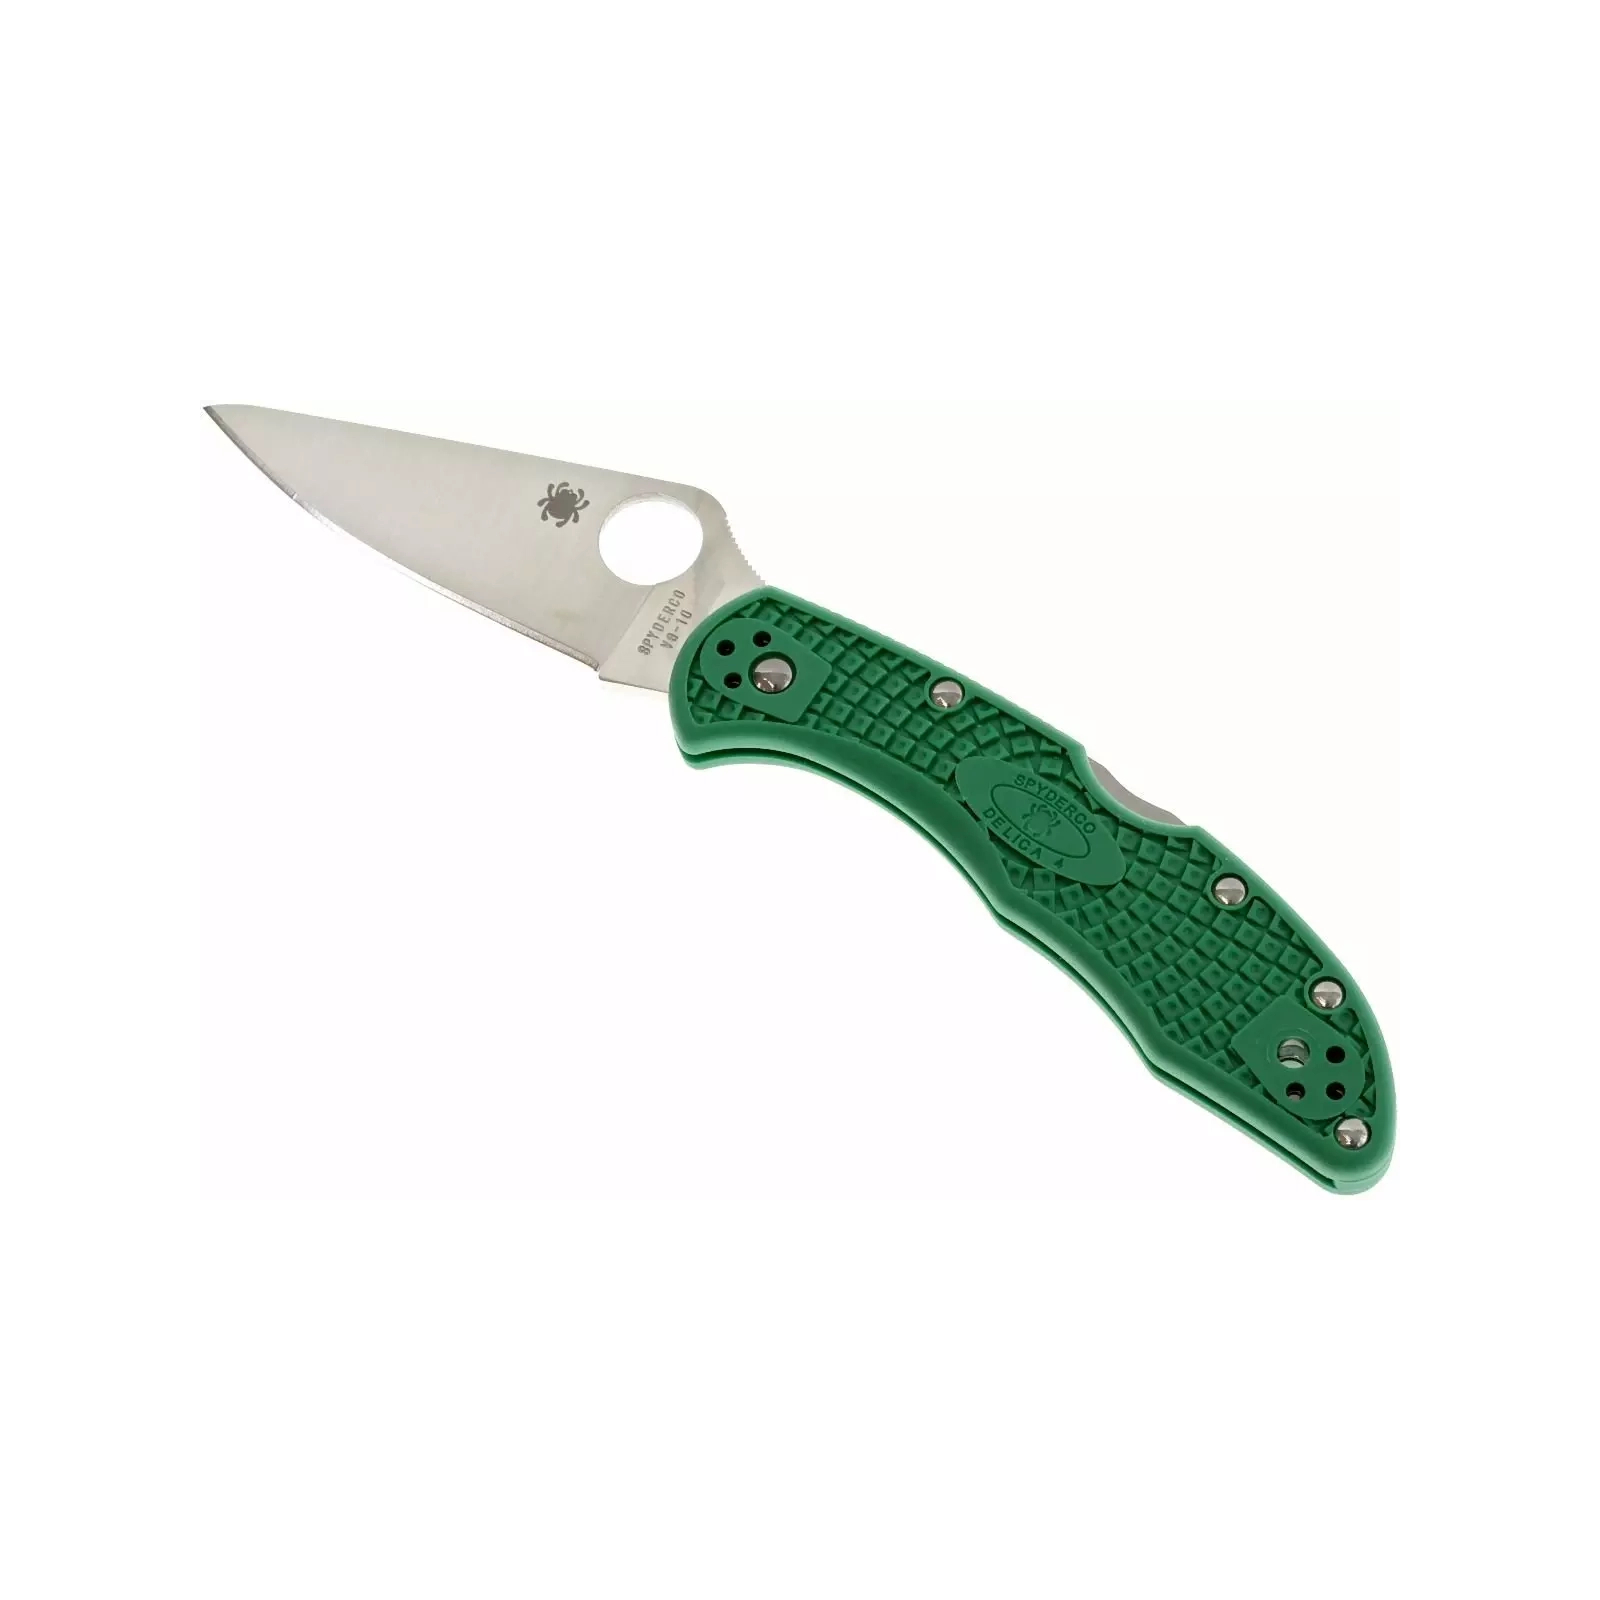 Нож Spyderco Delica 4 Flat Ground ACX 390 Green (C11FPGR) изображение 3